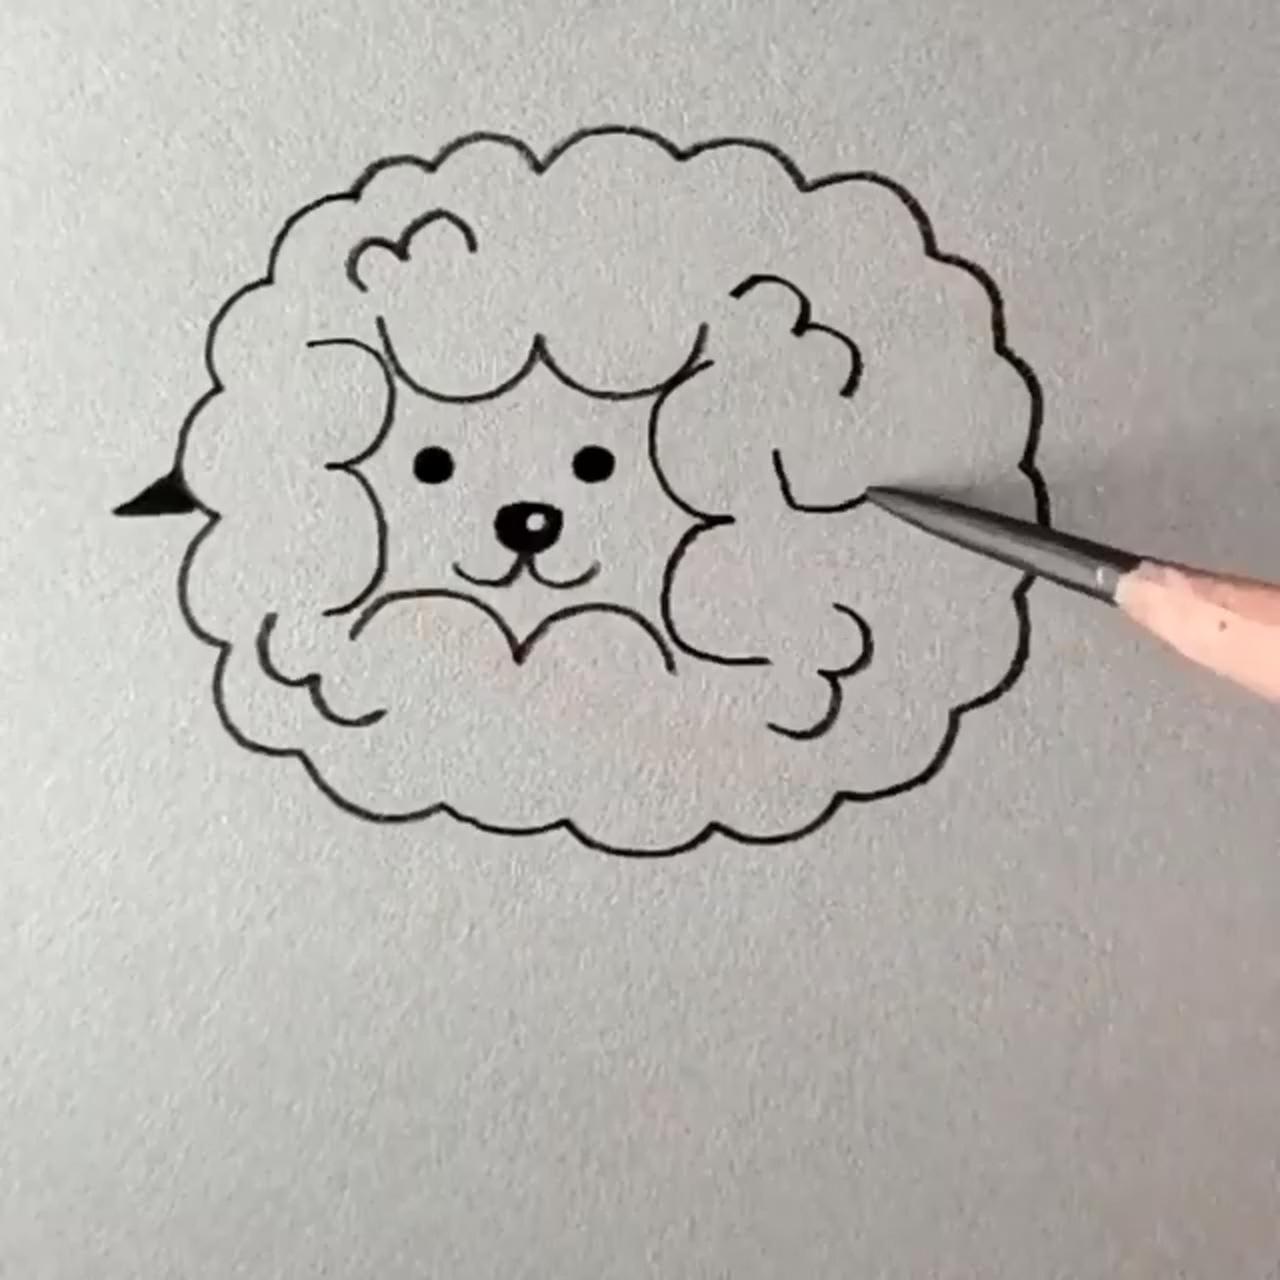 Cute easy drawings; art drawings for kids